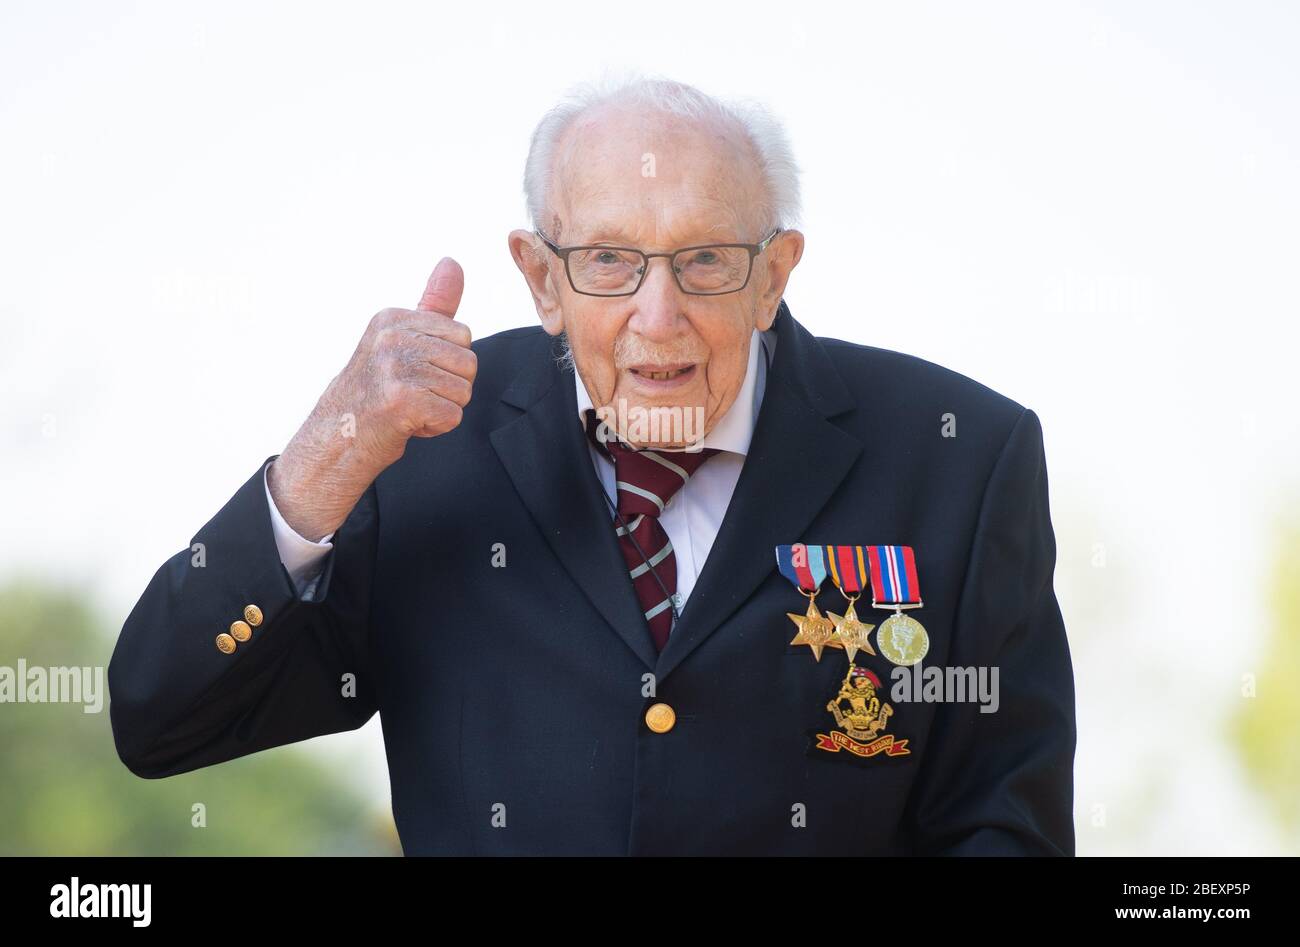 Le vétéran de guerre de 99 ans, Tom Moore, dans sa maison de Marston Morelaine, dans le Bedfordshire, a atteint son objectif de 100 tours dans son jardin, ce qui a permis de recueillir plus de 12 millions de livres pour le NHS. Banque D'Images